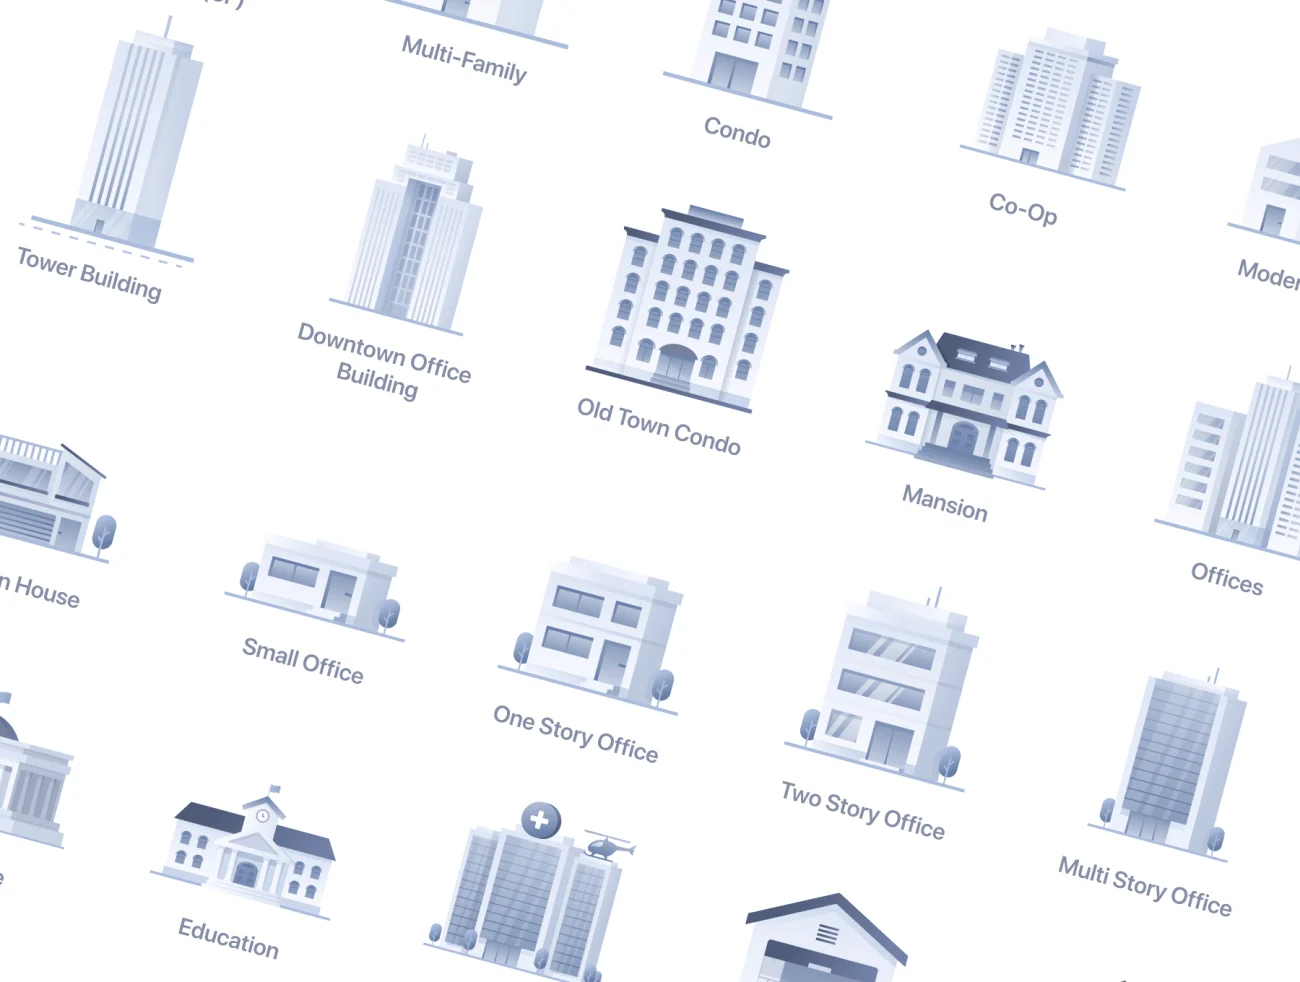 房地产房屋类型矢量图标 Web Icons Real Estate .sketch .AI .HTML .figma .lunacy-3D/图标-到位啦UI